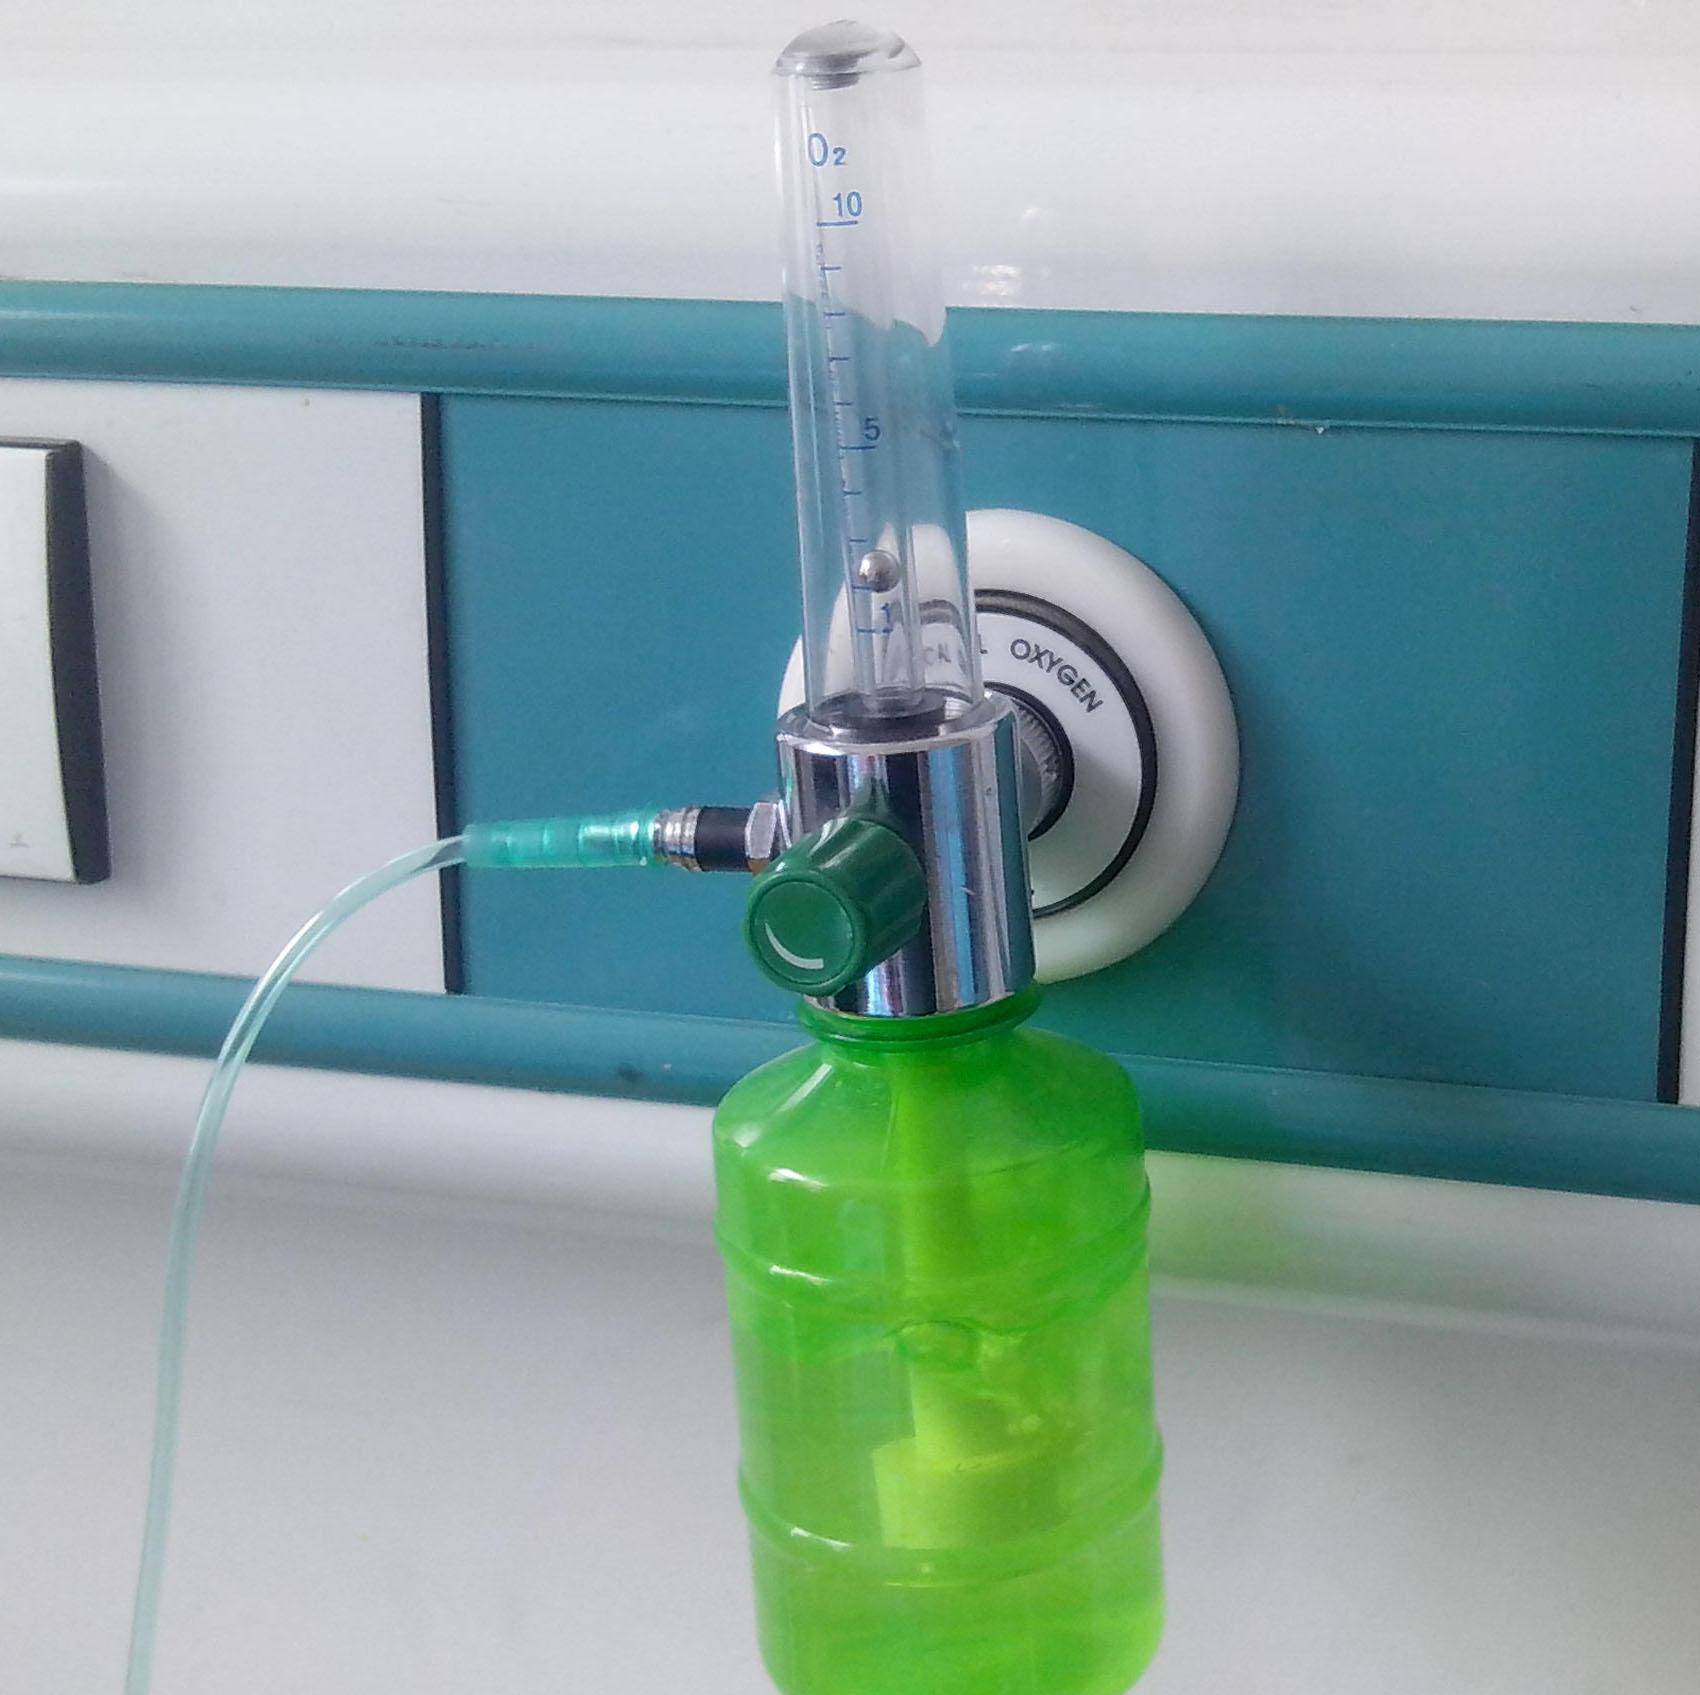 吸氧湿化瓶有什么作用,在使用时我们应该注意哪些事项?